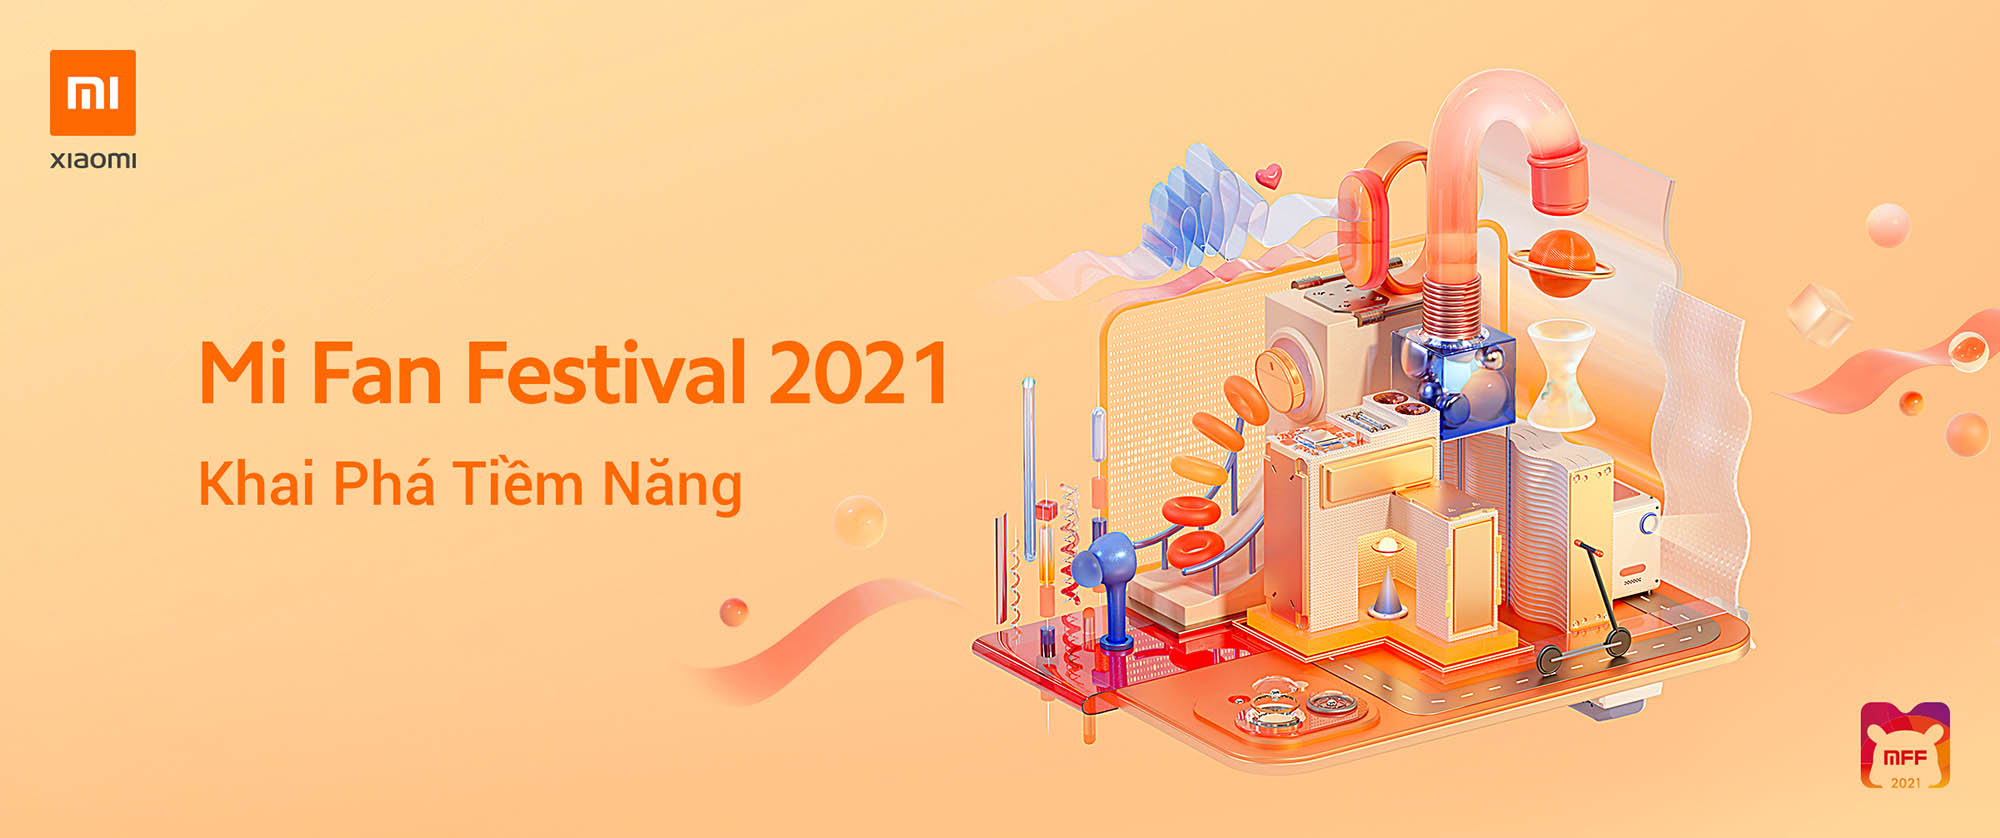 Xiaomi khởi động chương trình Lễ hội Mi Fan năm 2021